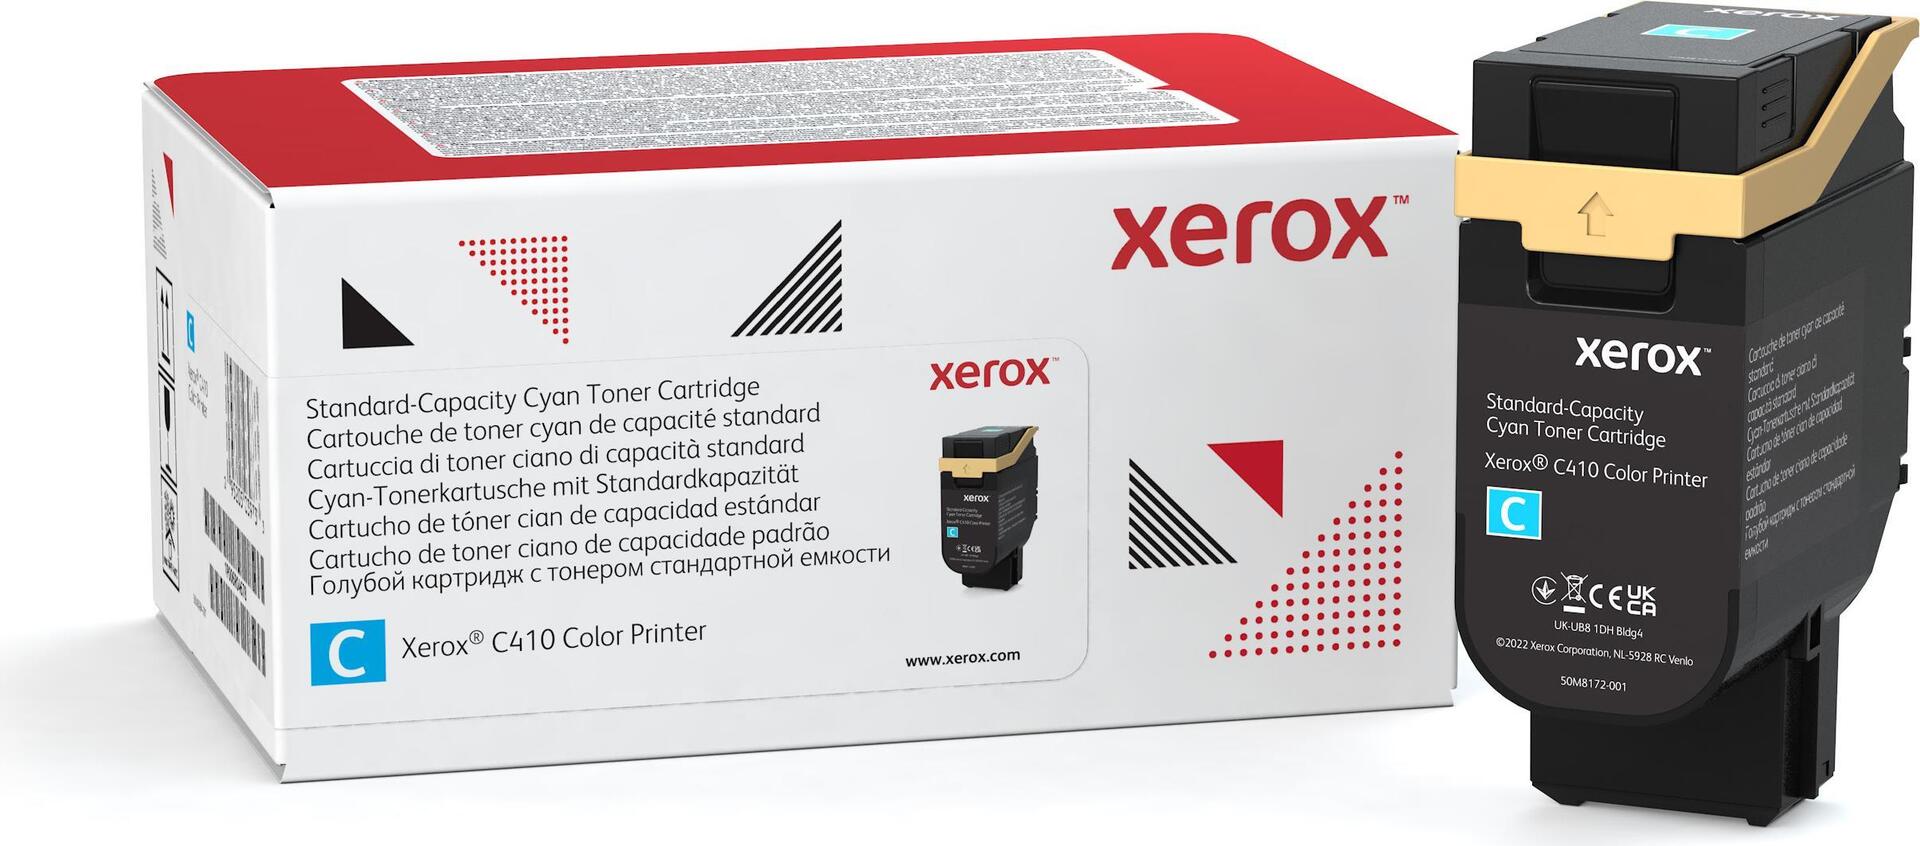 XEROX 006R04678 Toner Cyan für ca. 2.000 Seiten